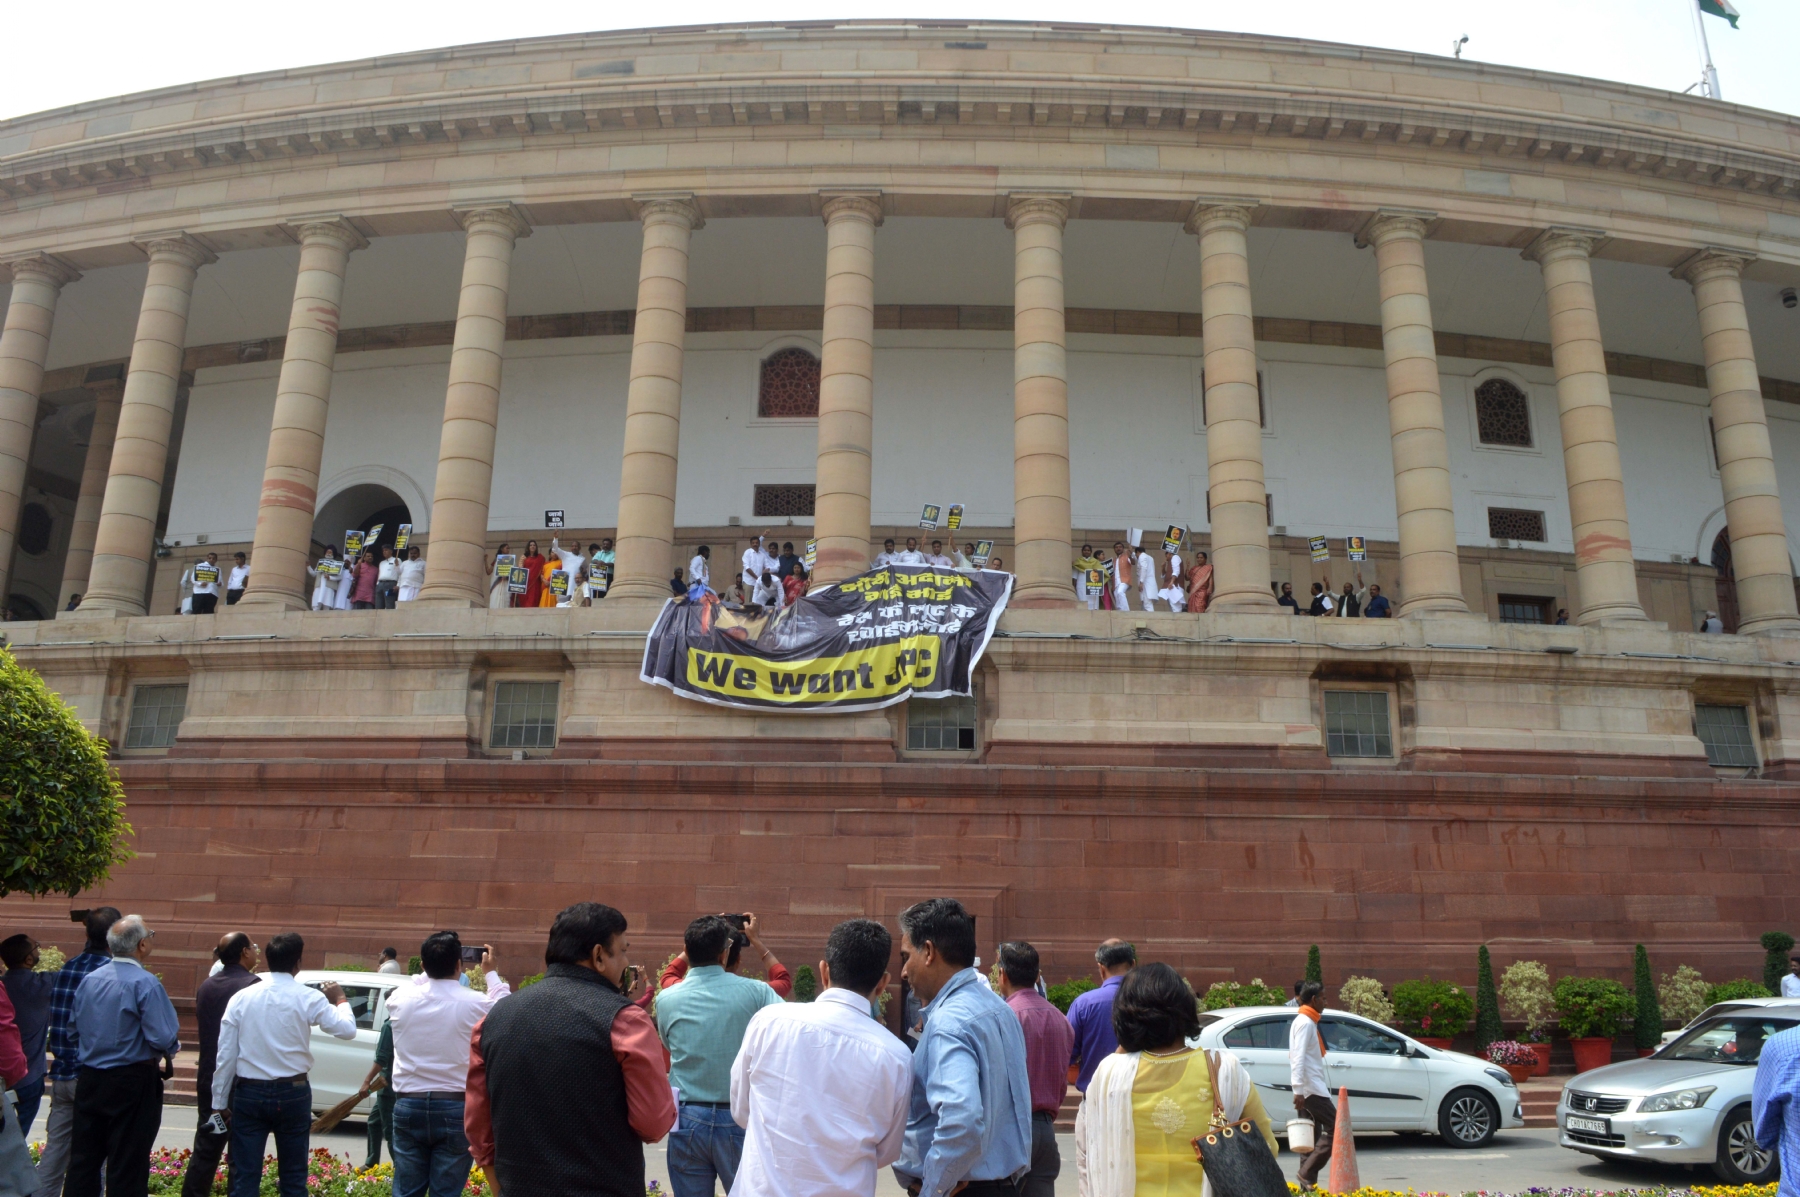 नई दिल्ली में मंगवार 21 मार्च को बजट का दूसरा सत्र के दौरान विपक्षी सांसदों ने संसद की पहली मंजिल पर विरोध प्रदर्शन किया। हिन्दुस्थान समाचार/ फोटो गणेश बिष्ट